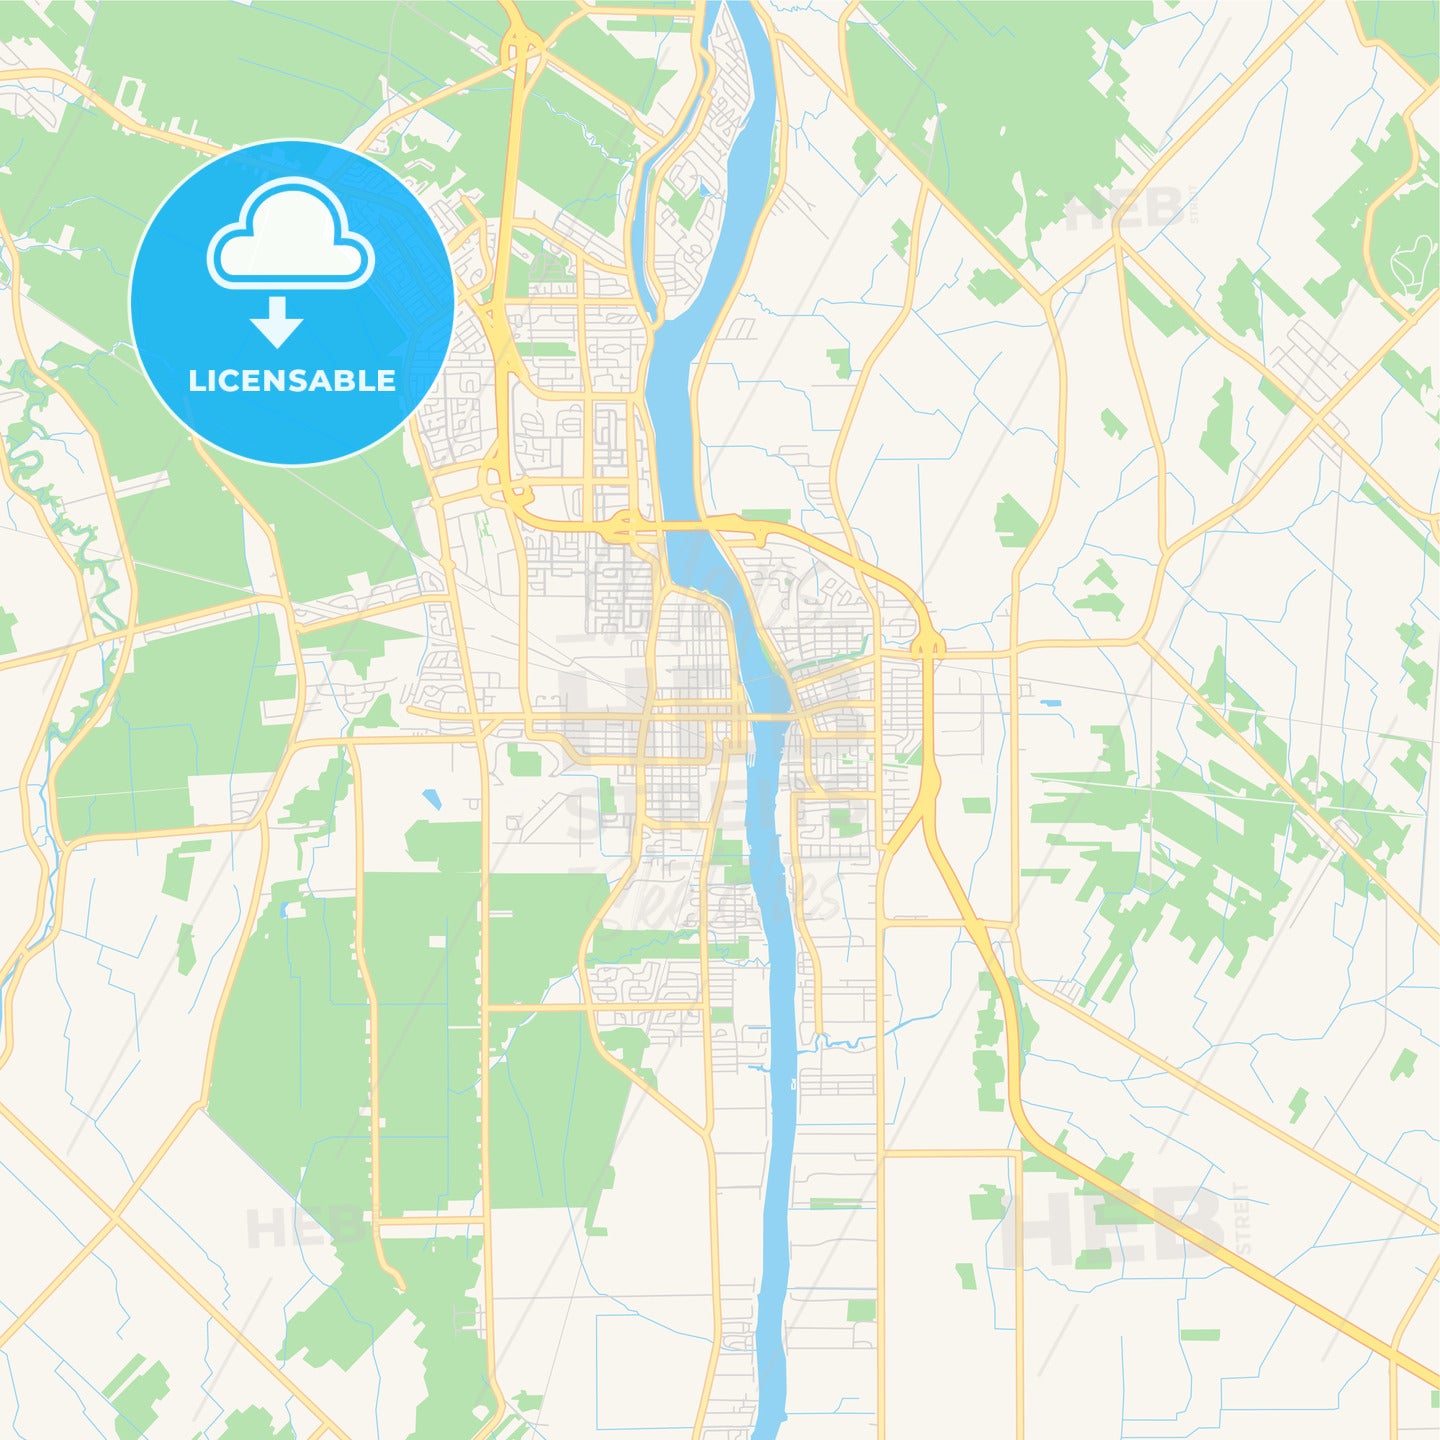 Empty vector map of Saint-Jean-sur-Richelieu, Quebec, Canada